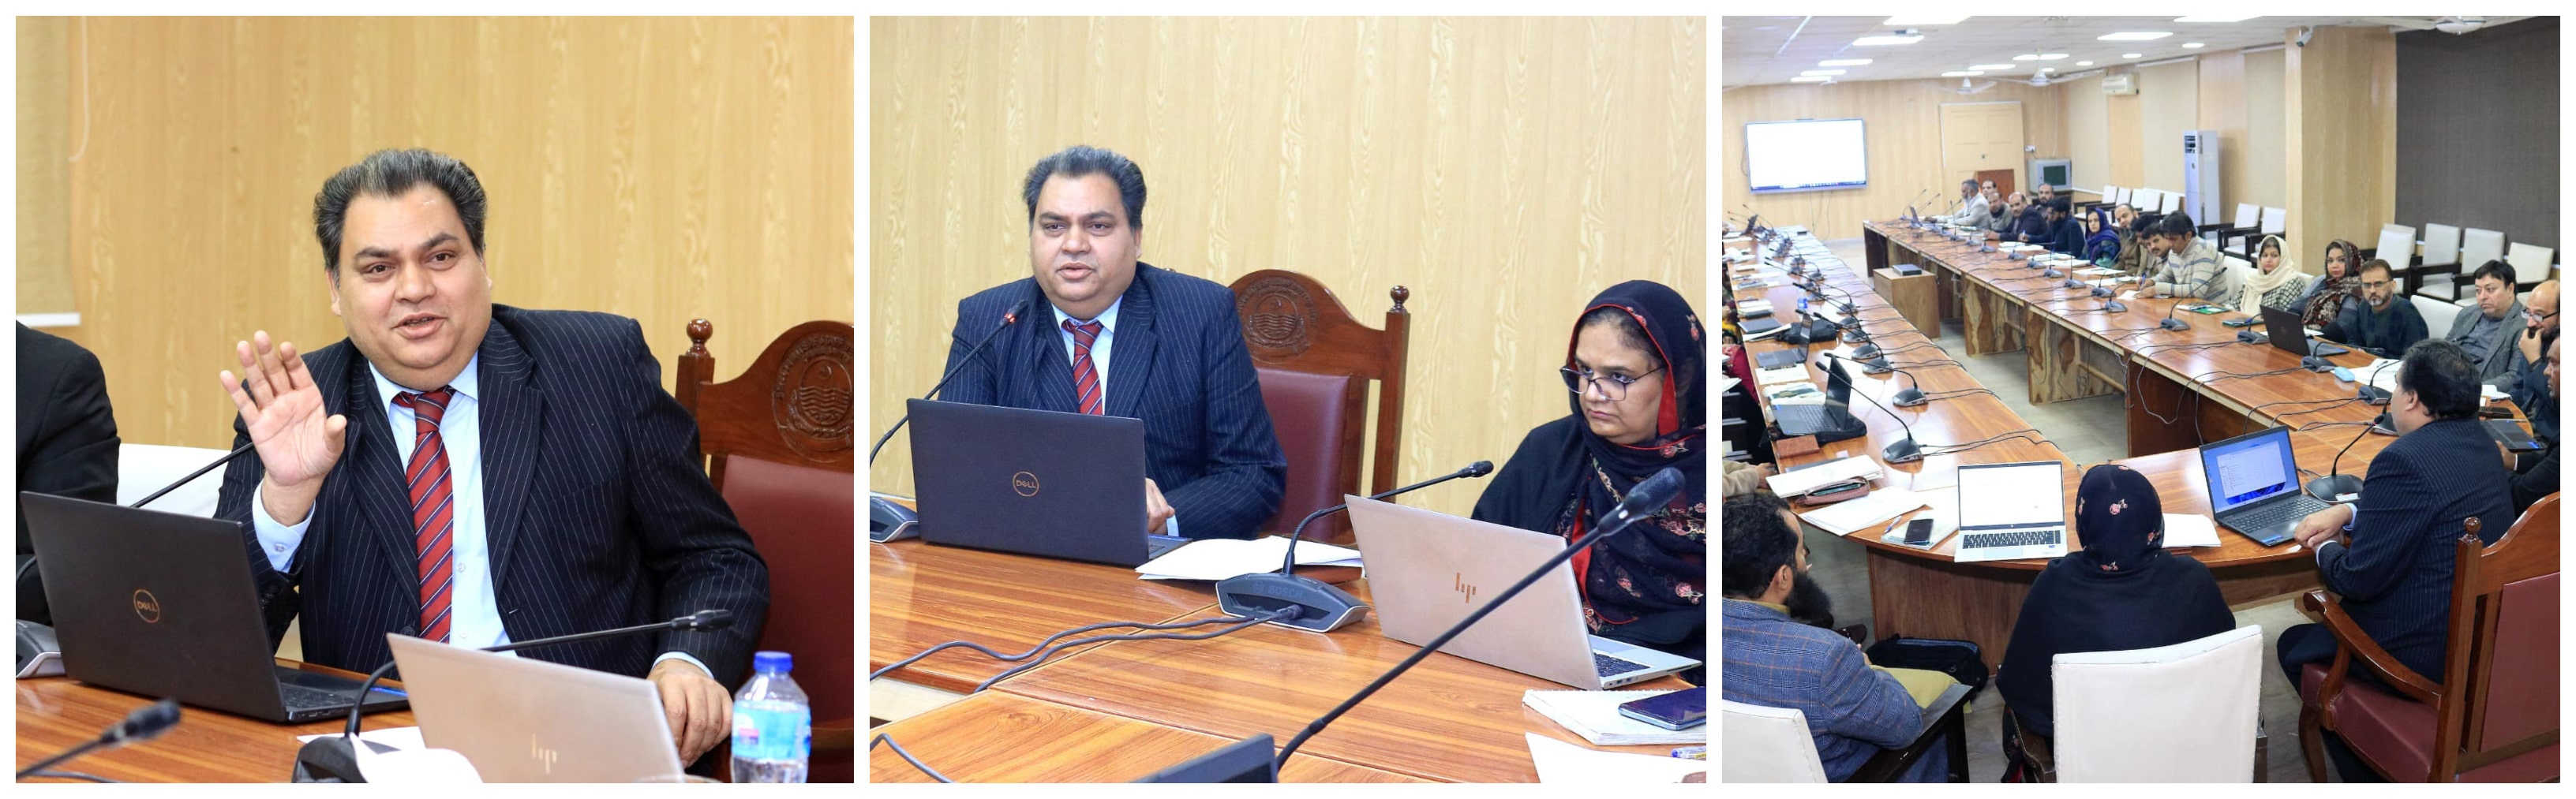 Weekly Review Meeting at QAED Punjab